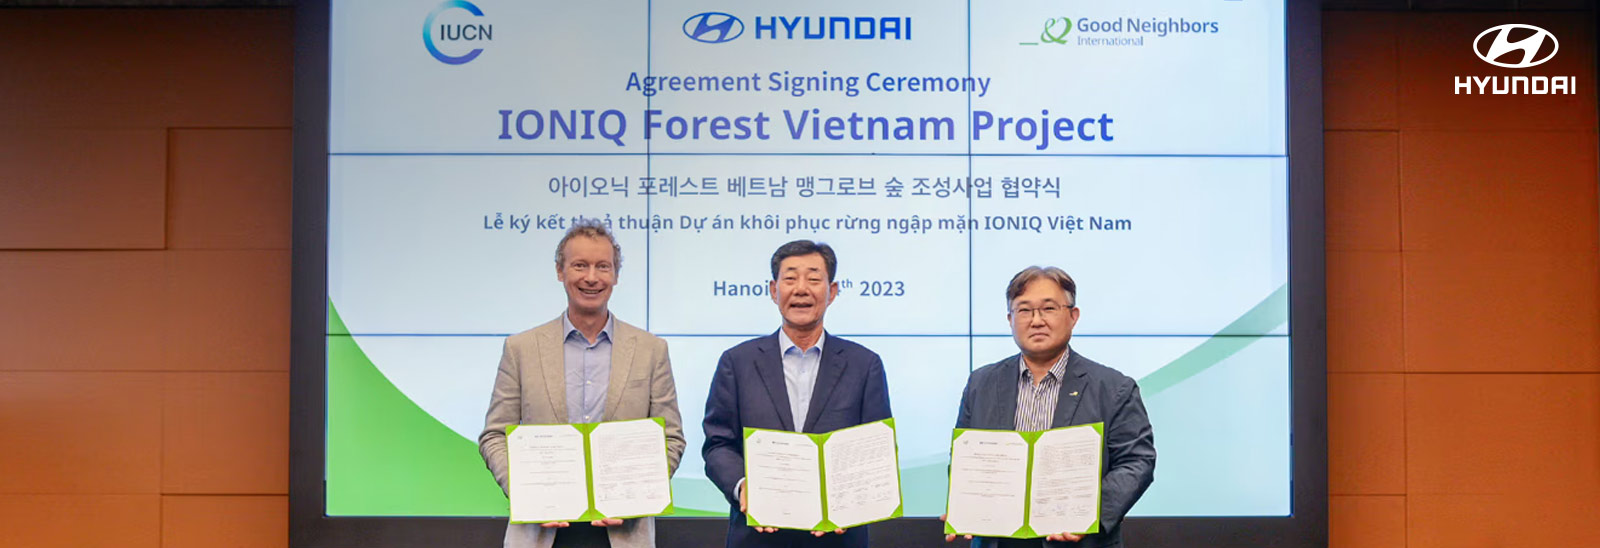 Hyundai Motor Company anunció una asociación de tres años con la Unión Internacional para la Conservación de la Naturaleza (UICN) y Good Neighbors International (GNI) para ampliar las soluciones de sostenibilidad en Vietnam.